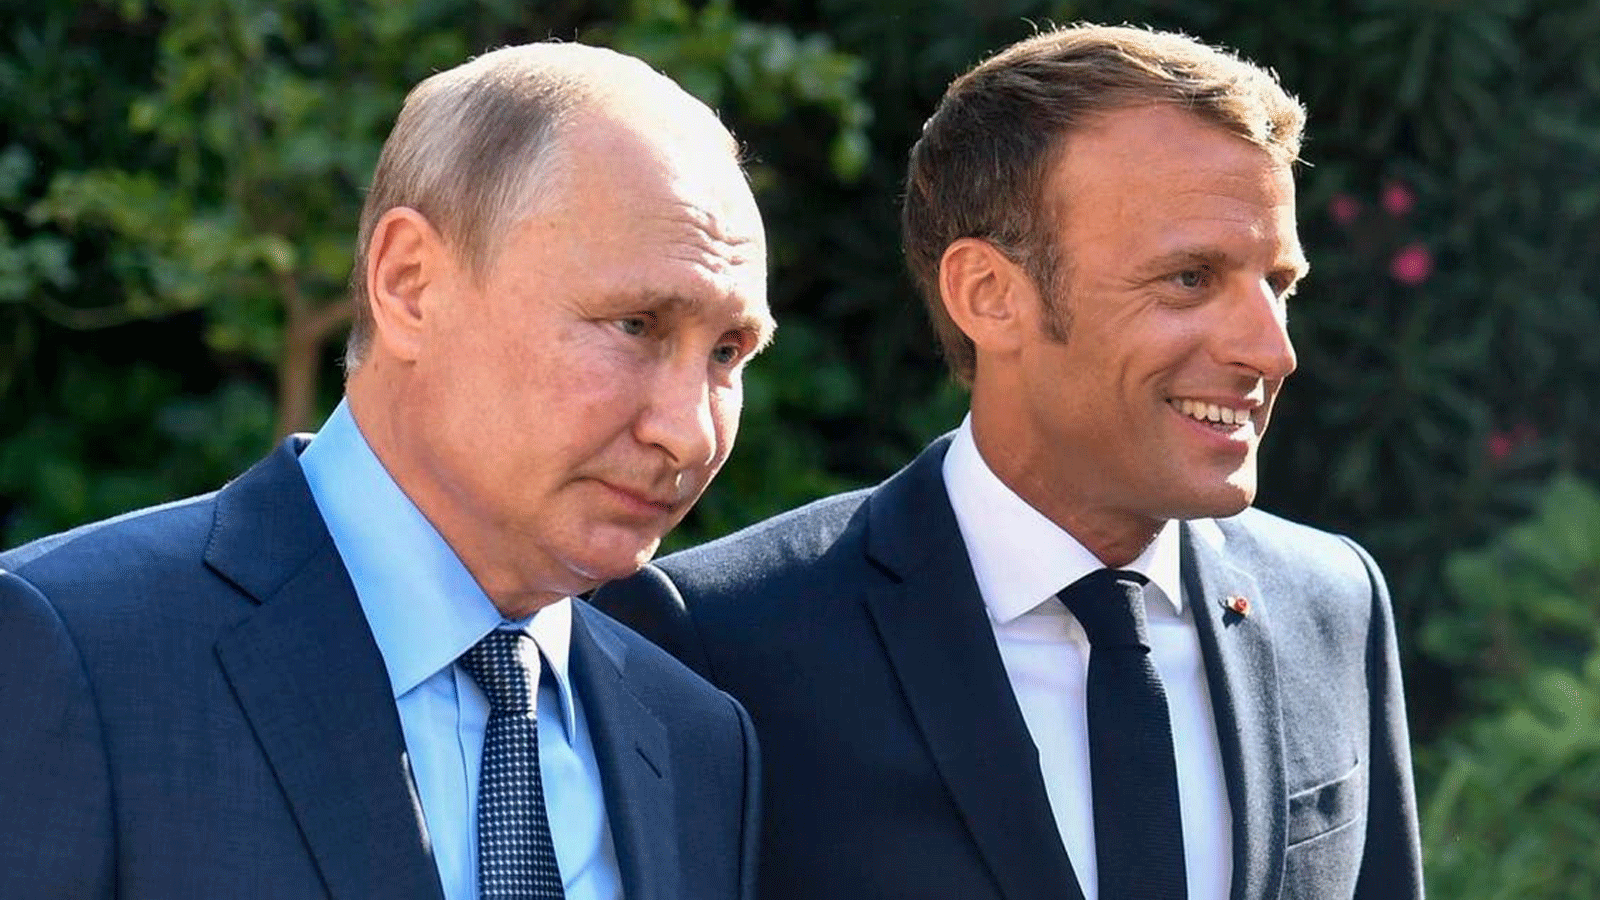 الرئيس الفرنسي ماكرون (يمين) يرحب بالرئيس الروسي بوتين في مقر إقامته الصيفي، فورت دي بريغانكون على الريفييرا الفرنسية